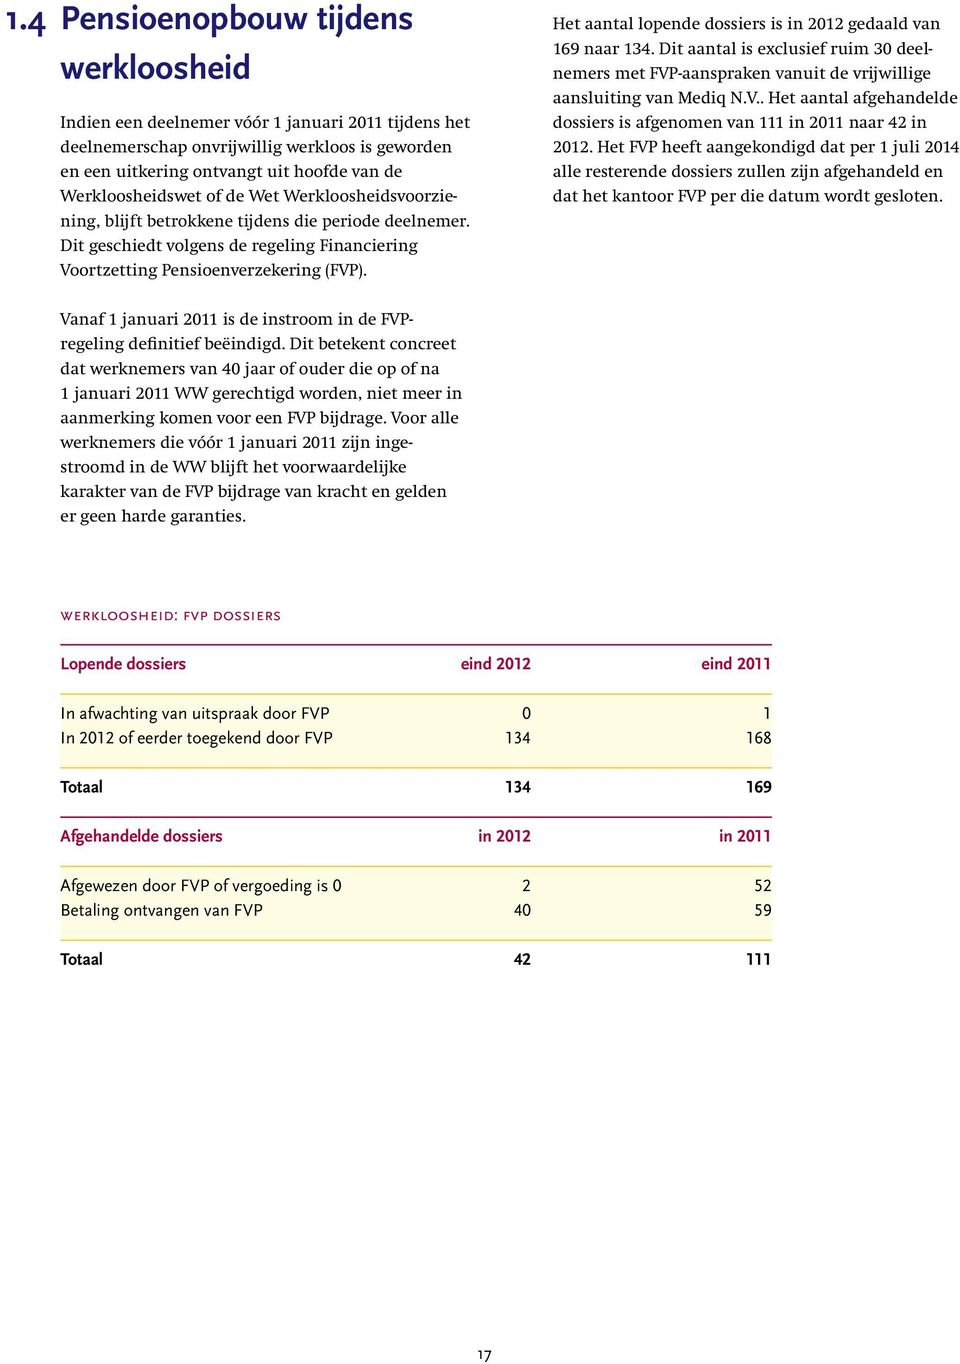 Het aantal lopende dossiers is in 2012 gedaald van 169 naar 134. Dit aantal is exclusief ruim 30 deelnemers met FVP-aanspraken vanuit de vrijwillige aansluiting van Mediq N.V.. Het aantal afgehandelde dossiers is afgenomen van 111 in 2011 naar 42 in 2012.